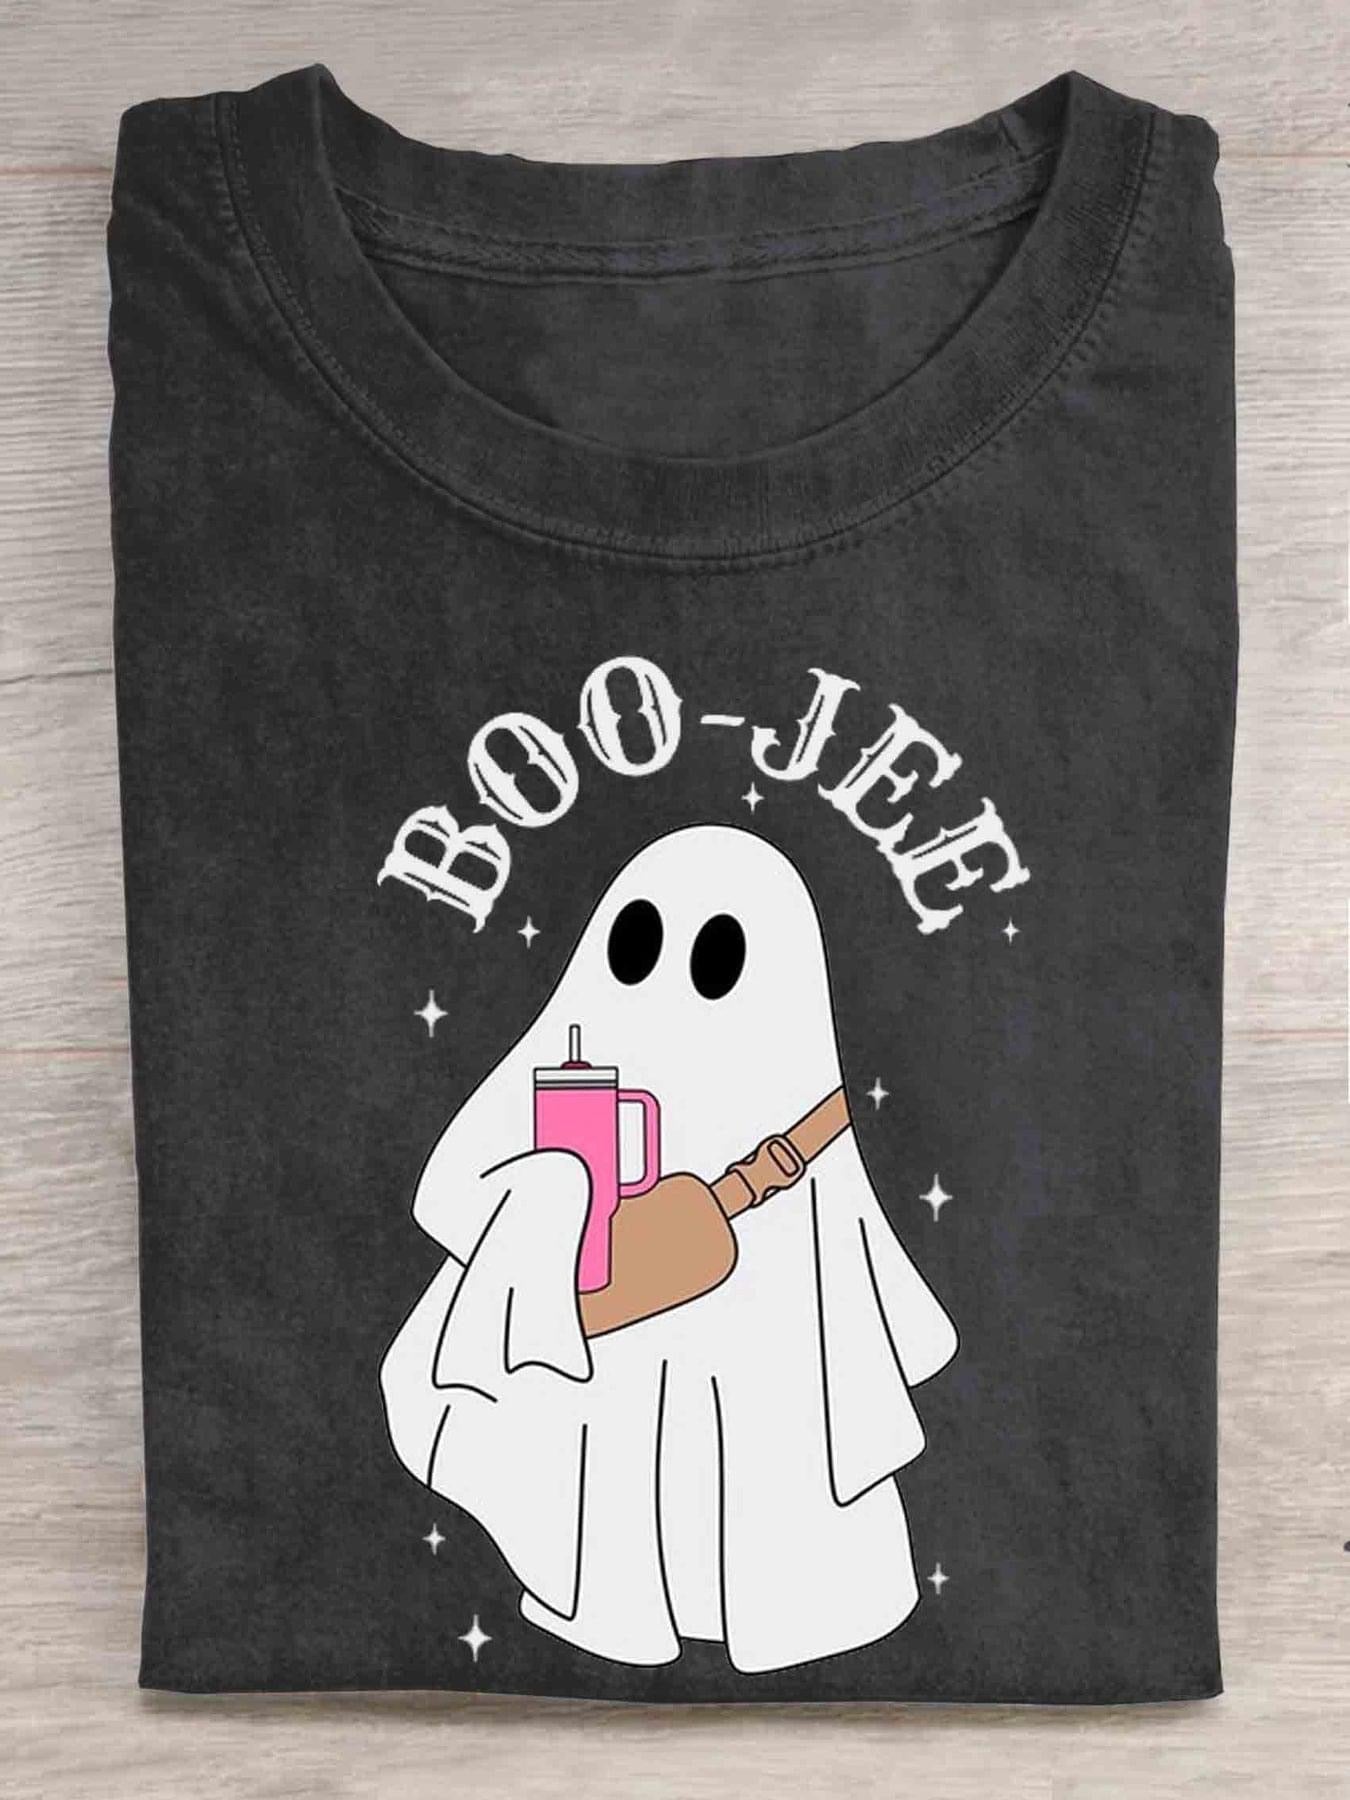 Boo-jee Ghost